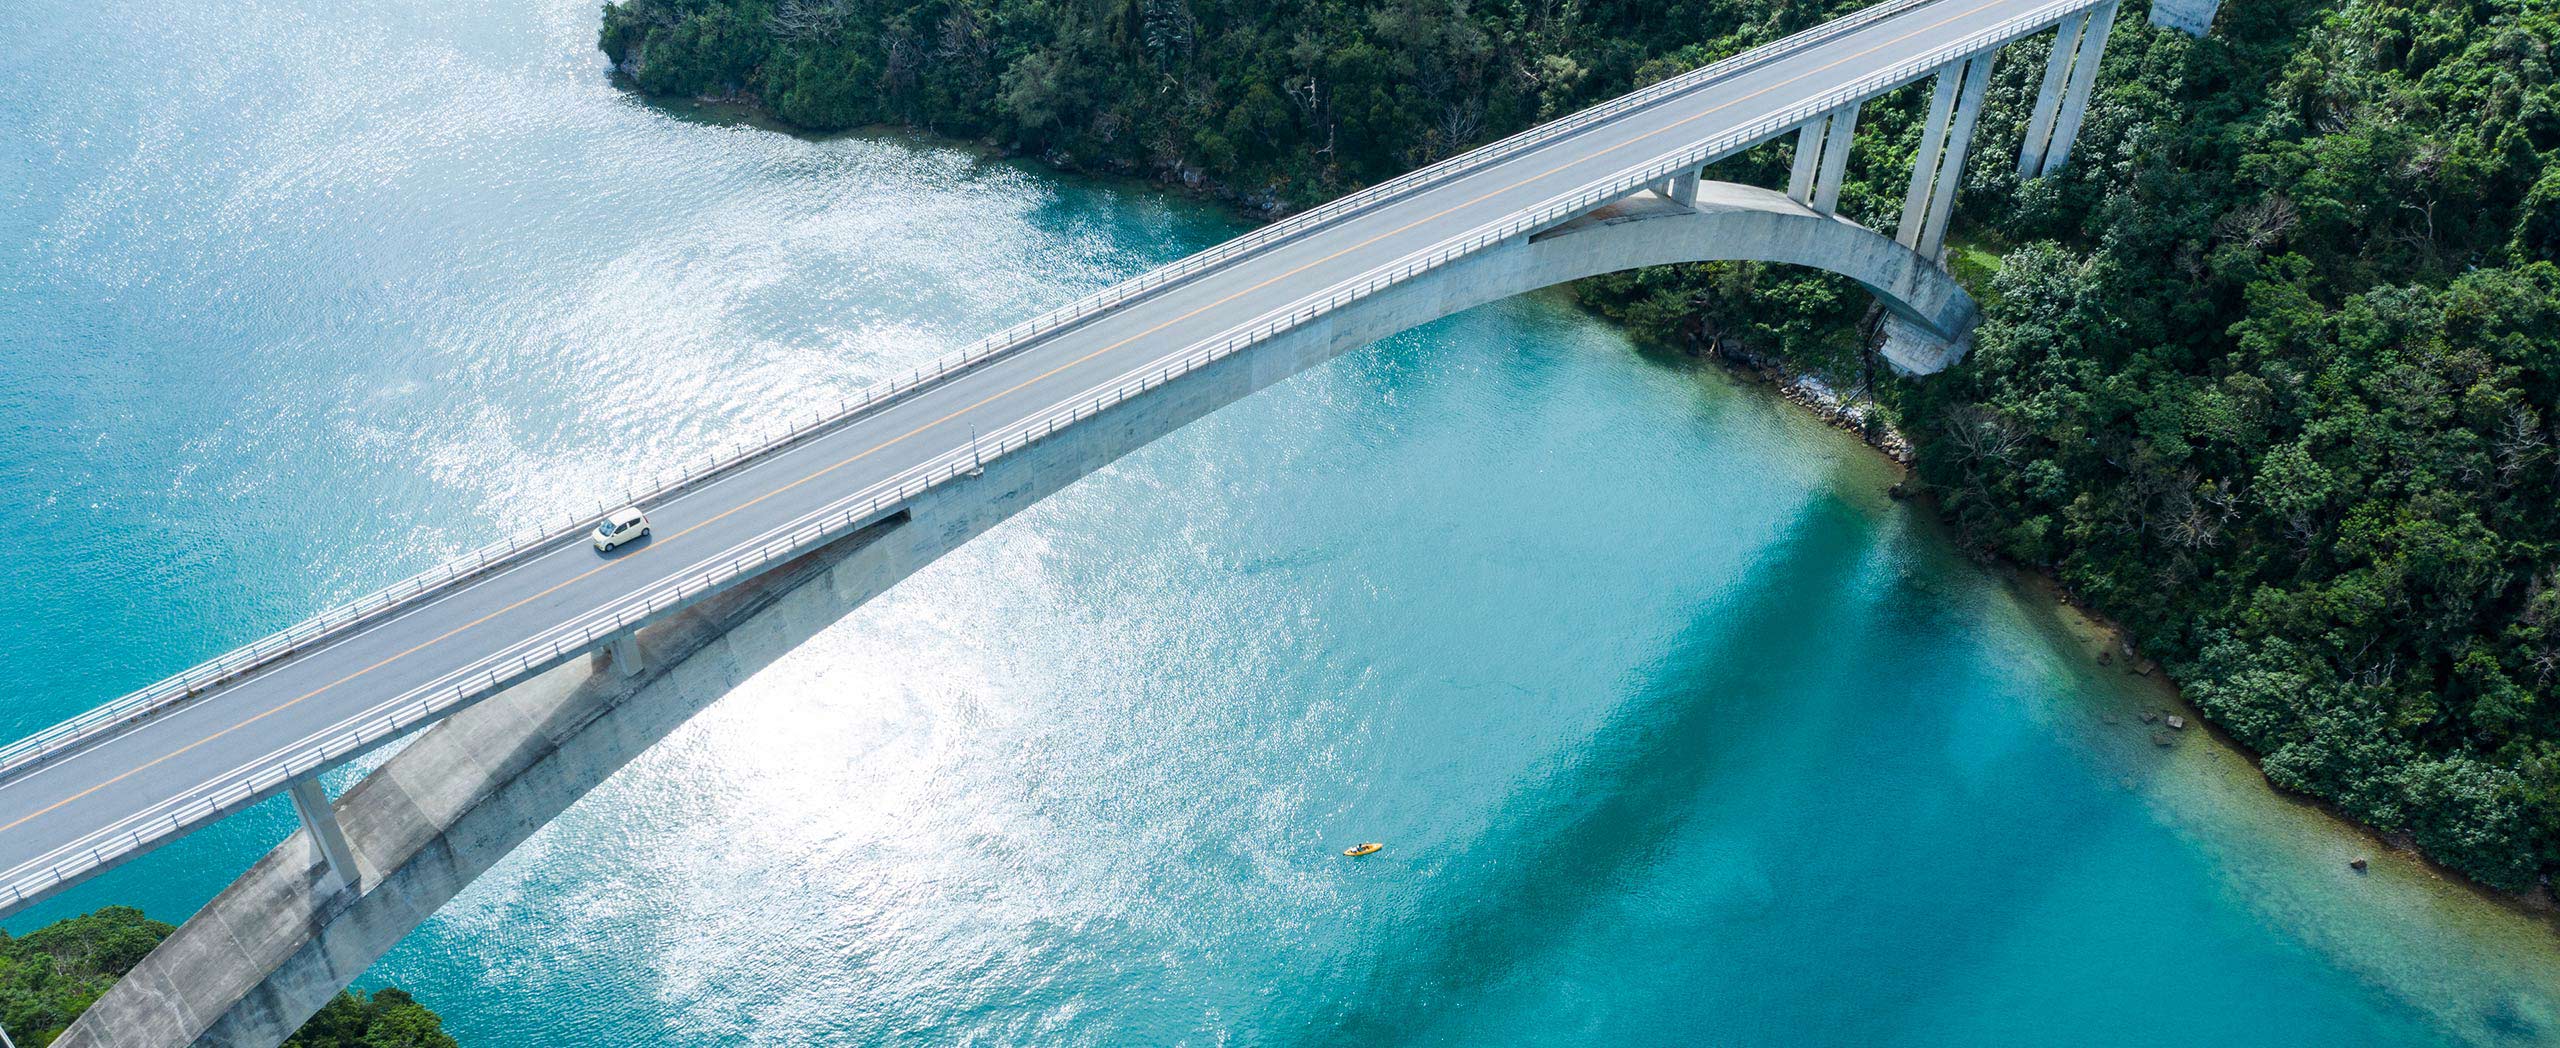 image of bridge over water